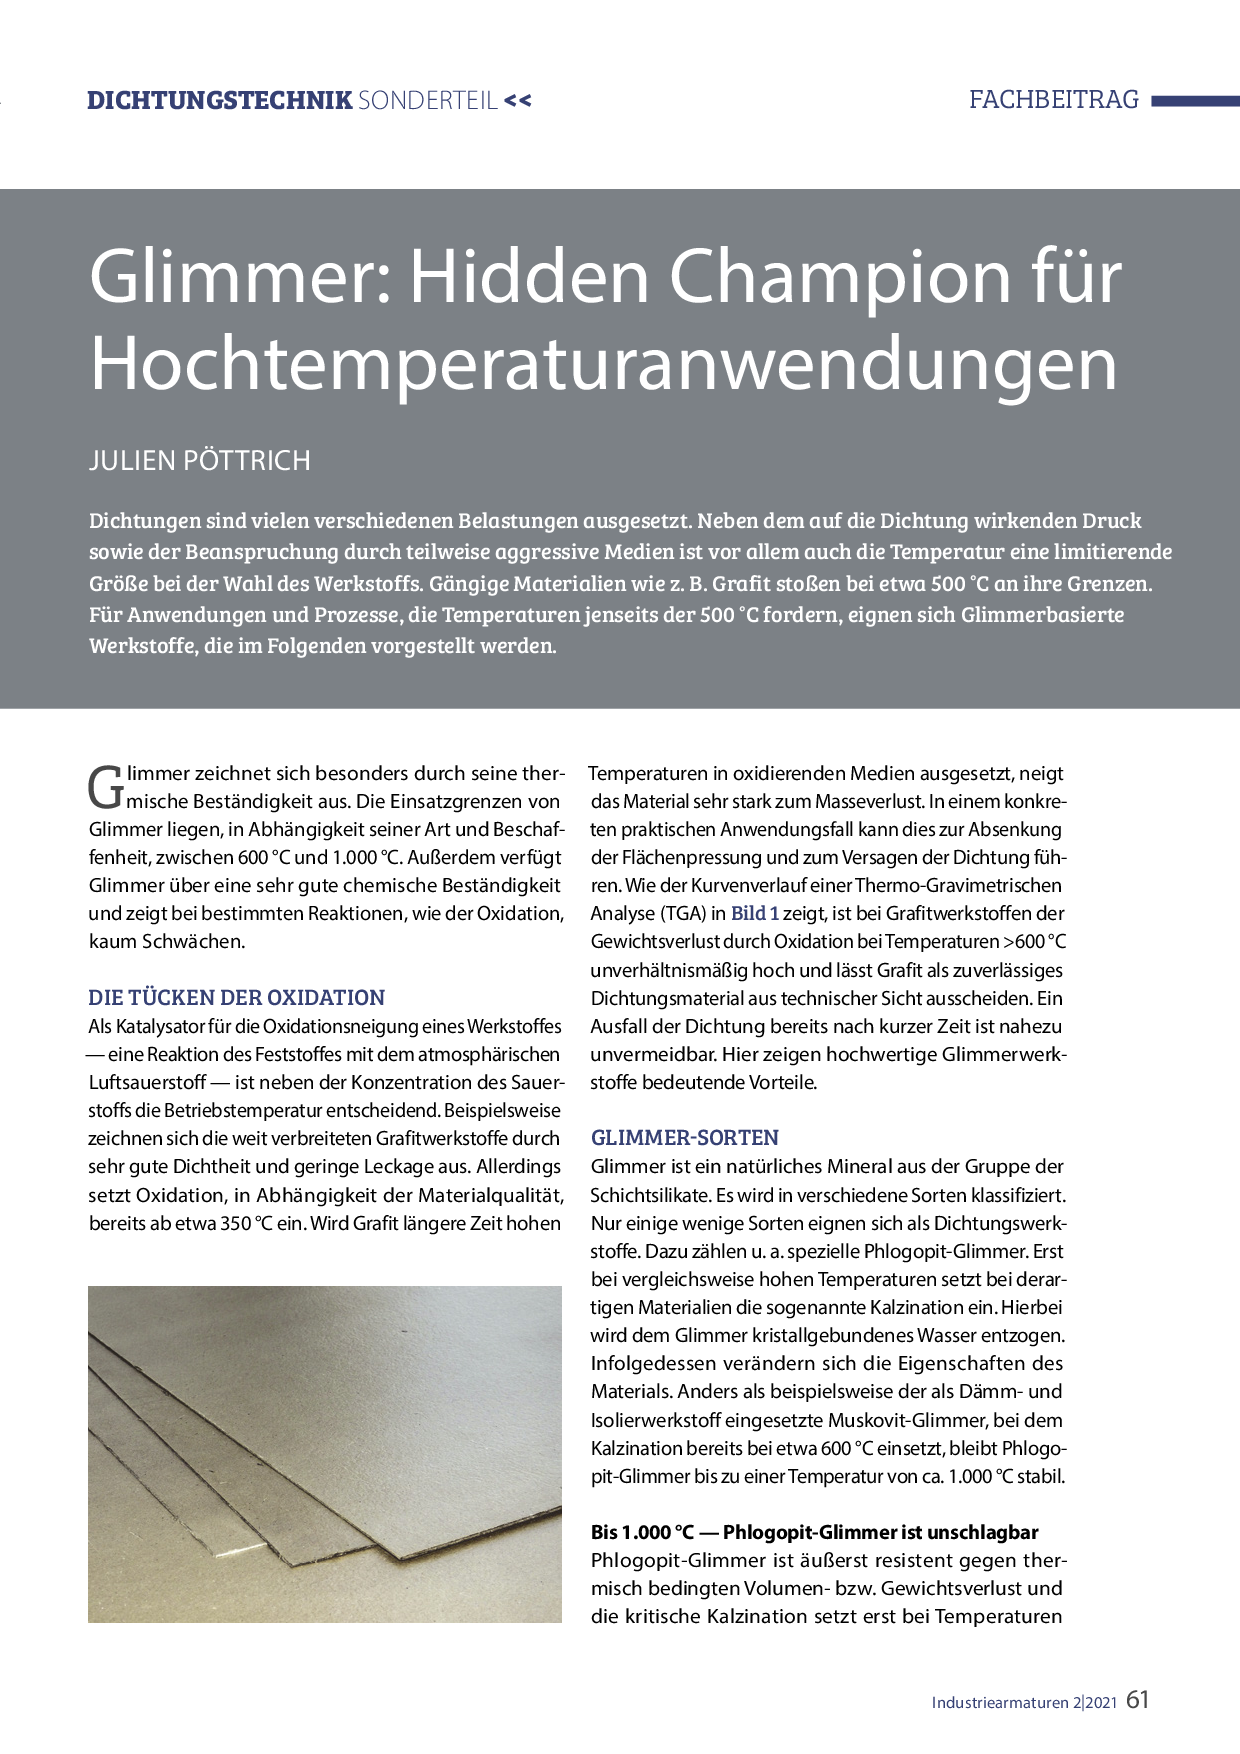 Glimmer: Hidden Champion für Hochtemperaturanwendungen